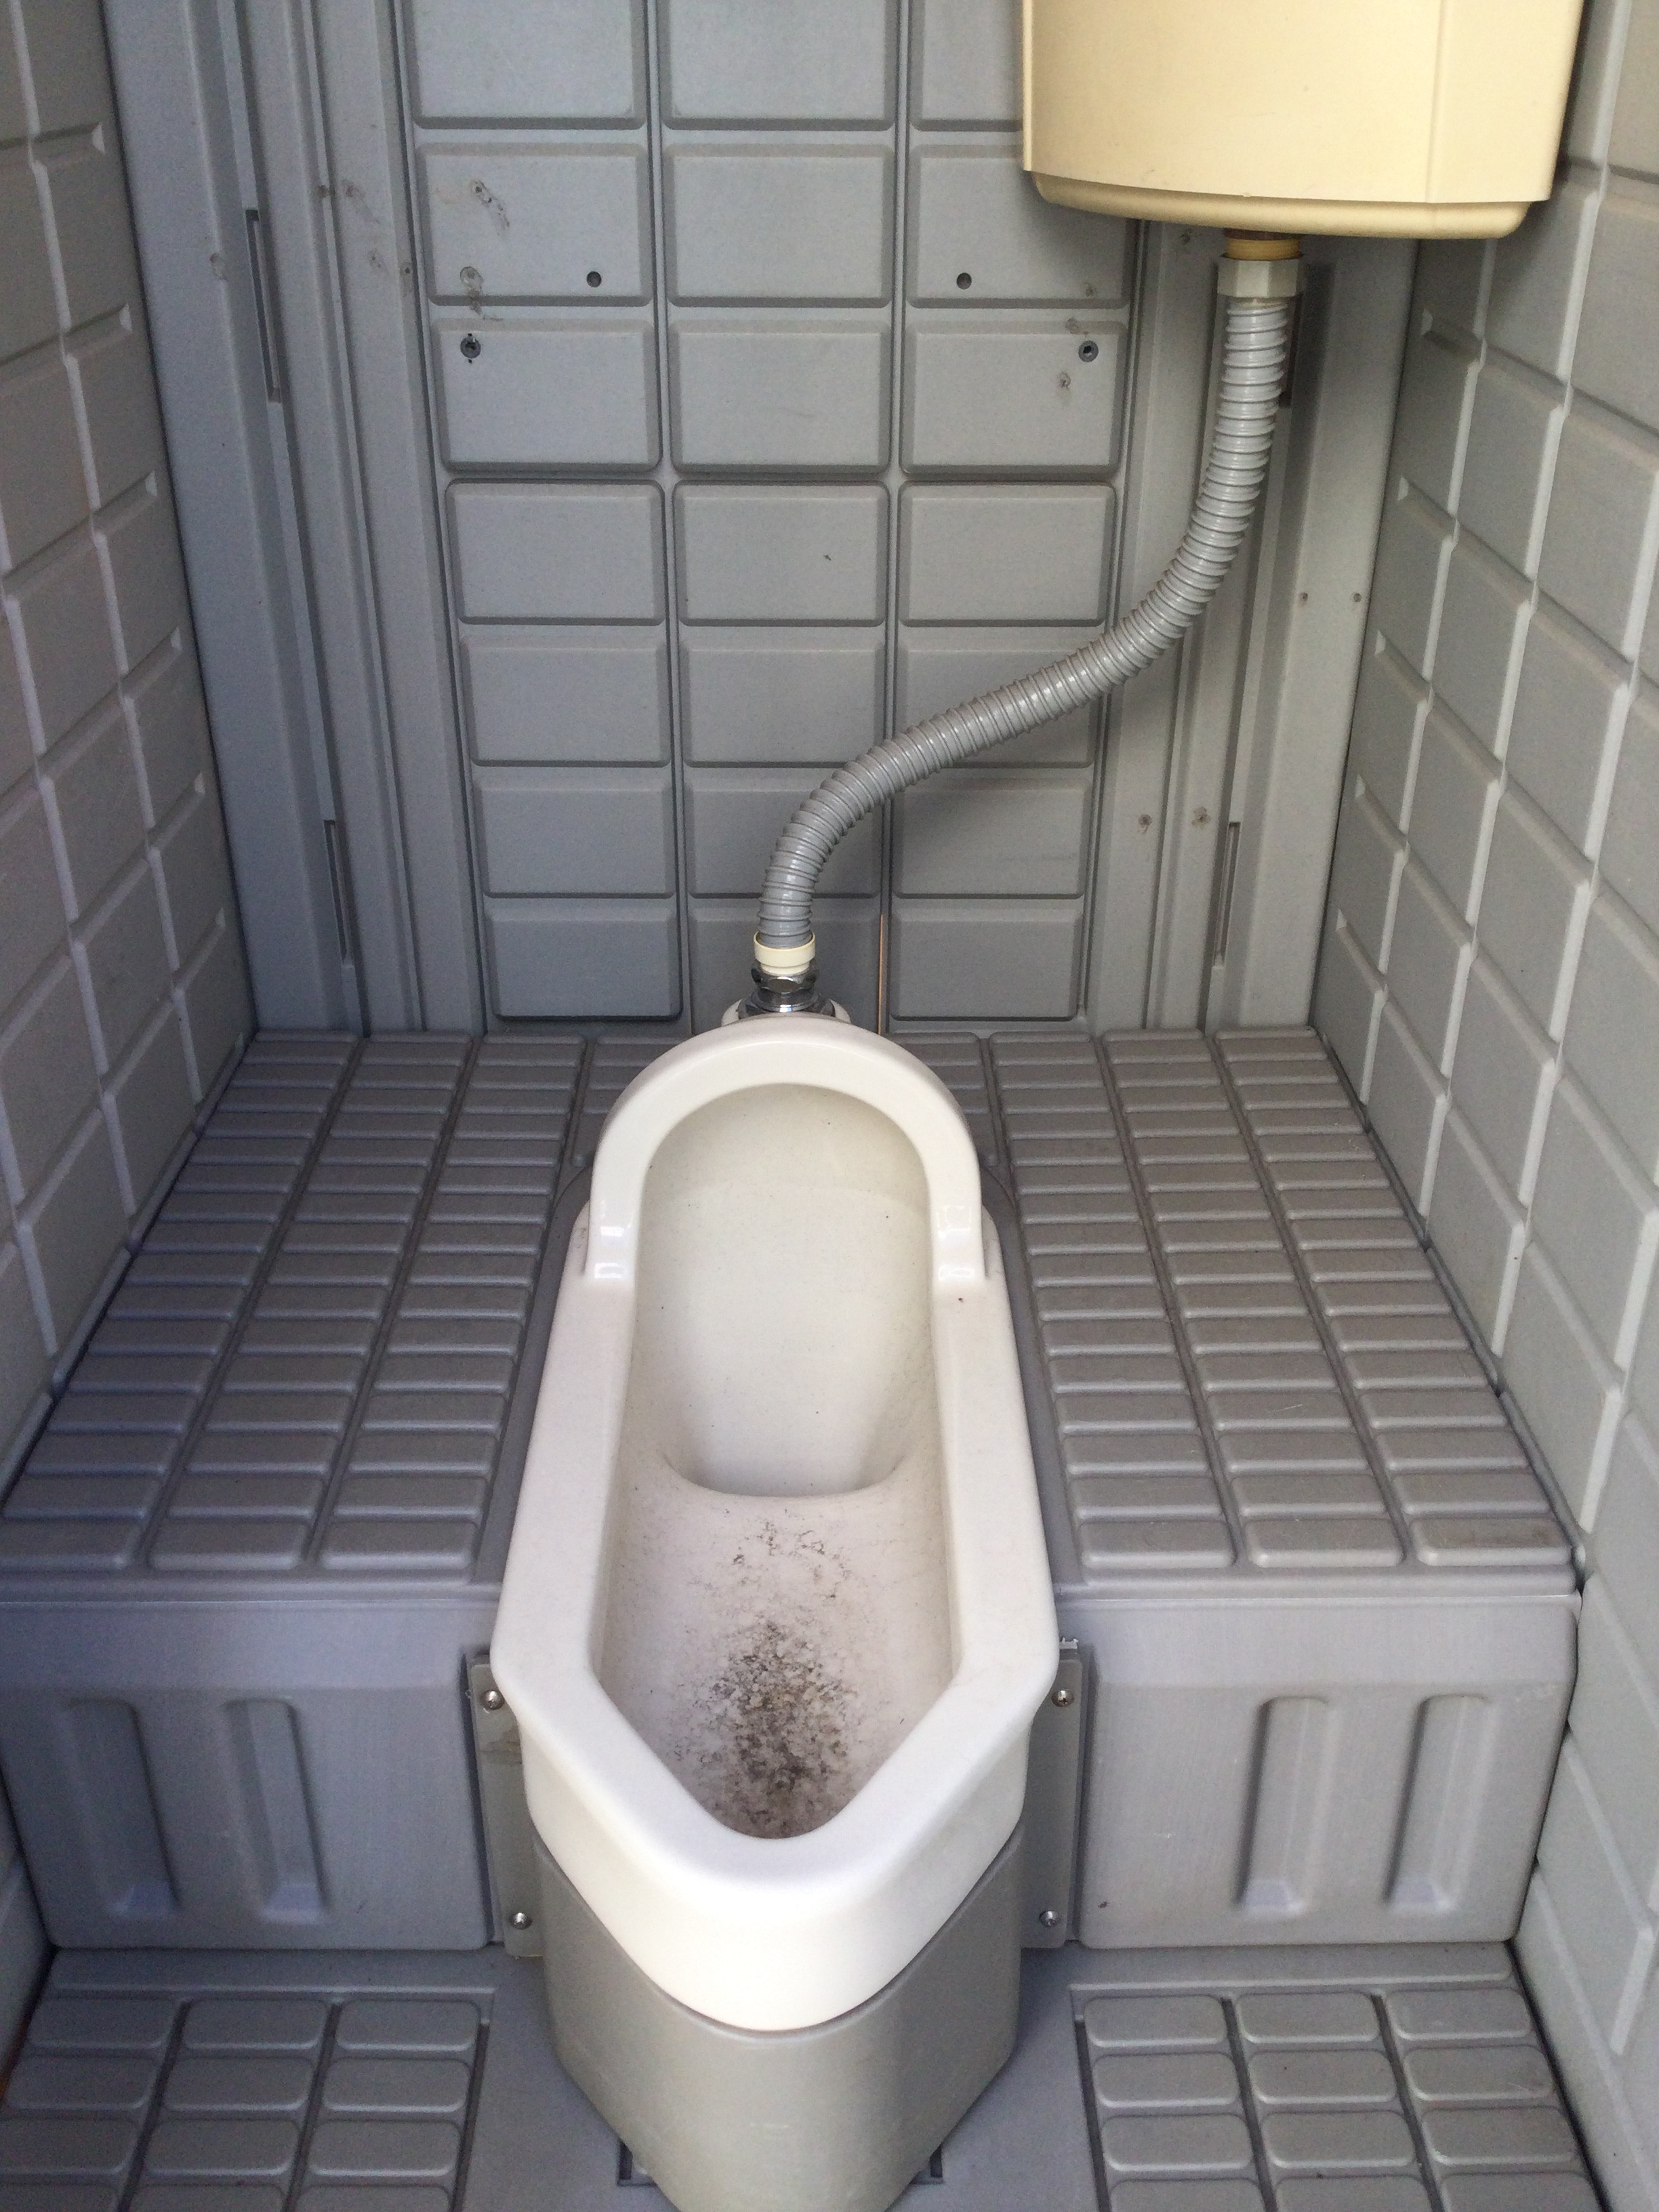 中古【仮設トイレ】EX1_2090 和式 水洗トイレ(陶器) 水道直結型 衛生的 